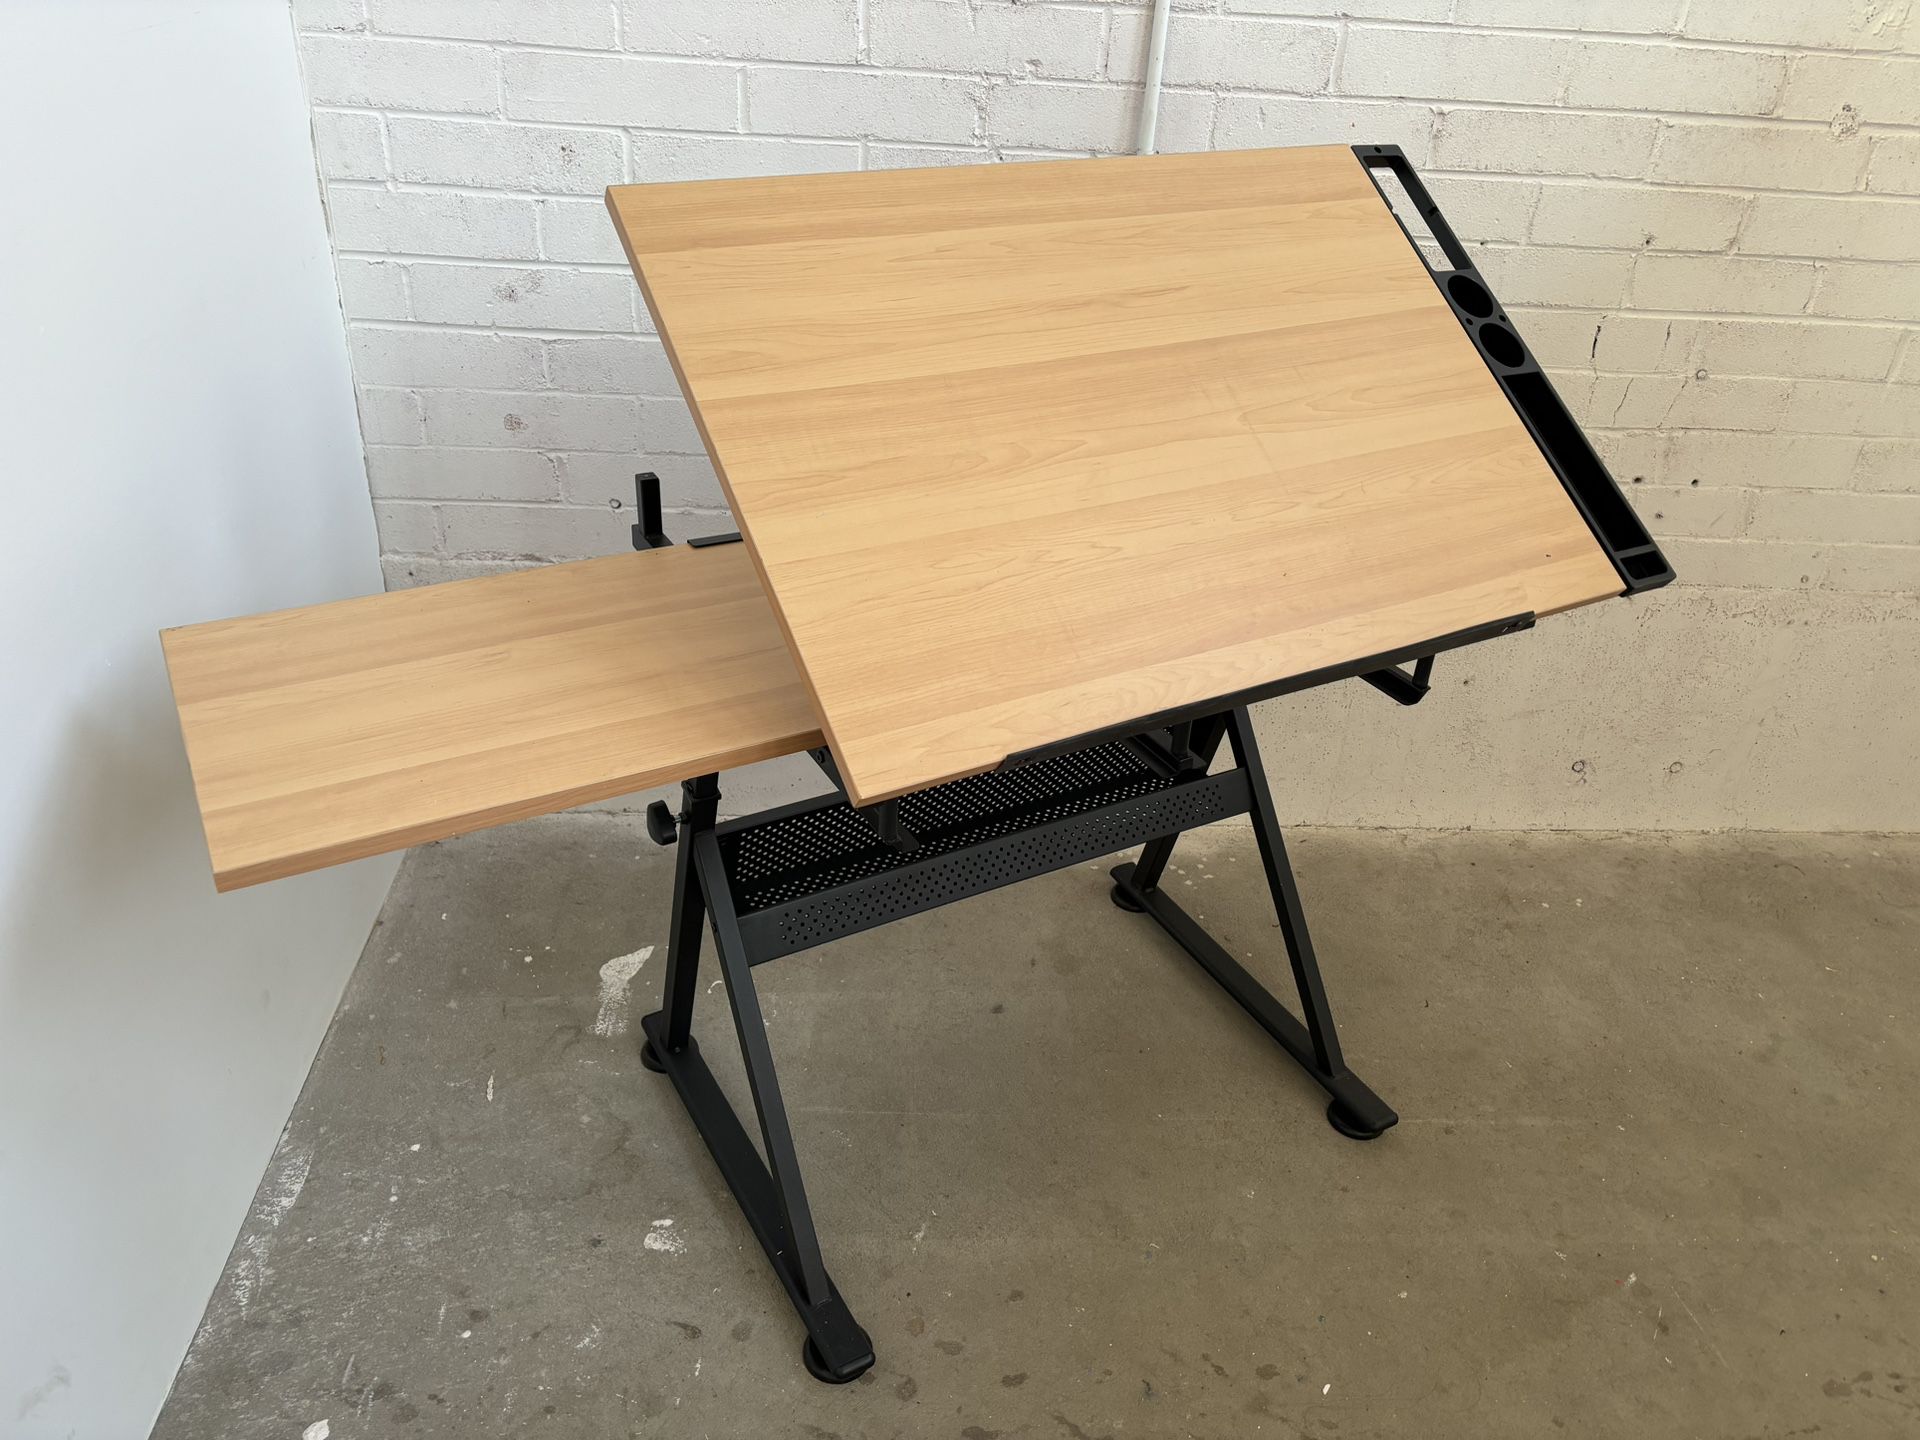 Adjustable Art Table